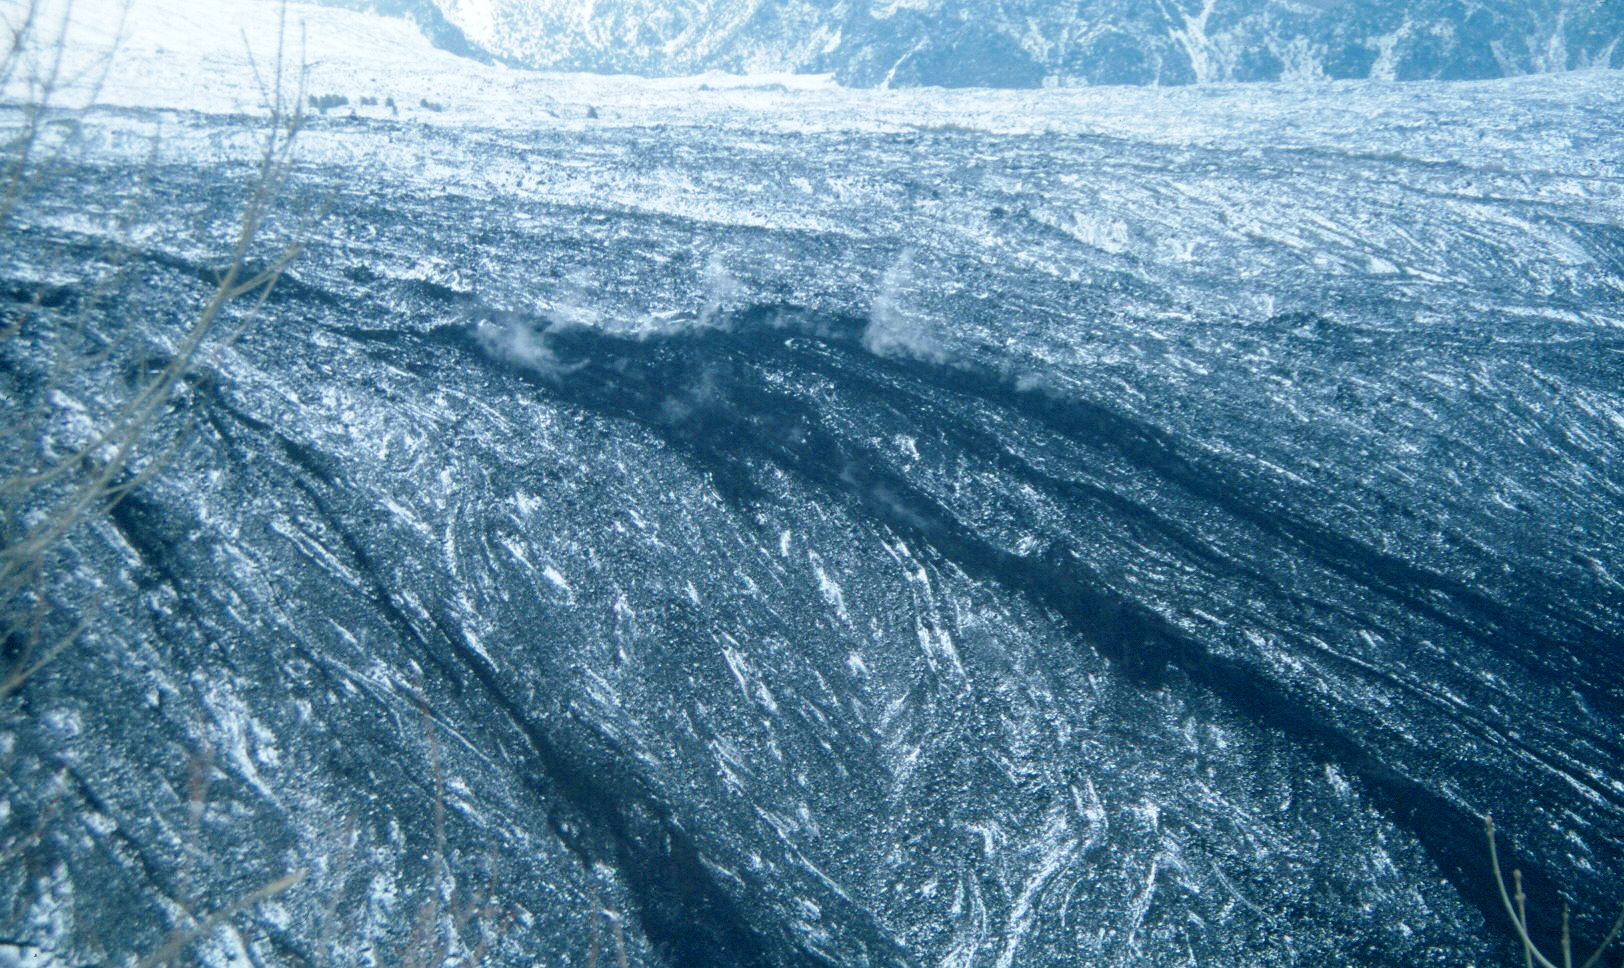 1997. Coladas humeantes (vapor por contacto con la nieve) descendiendo por el Valle del Bove